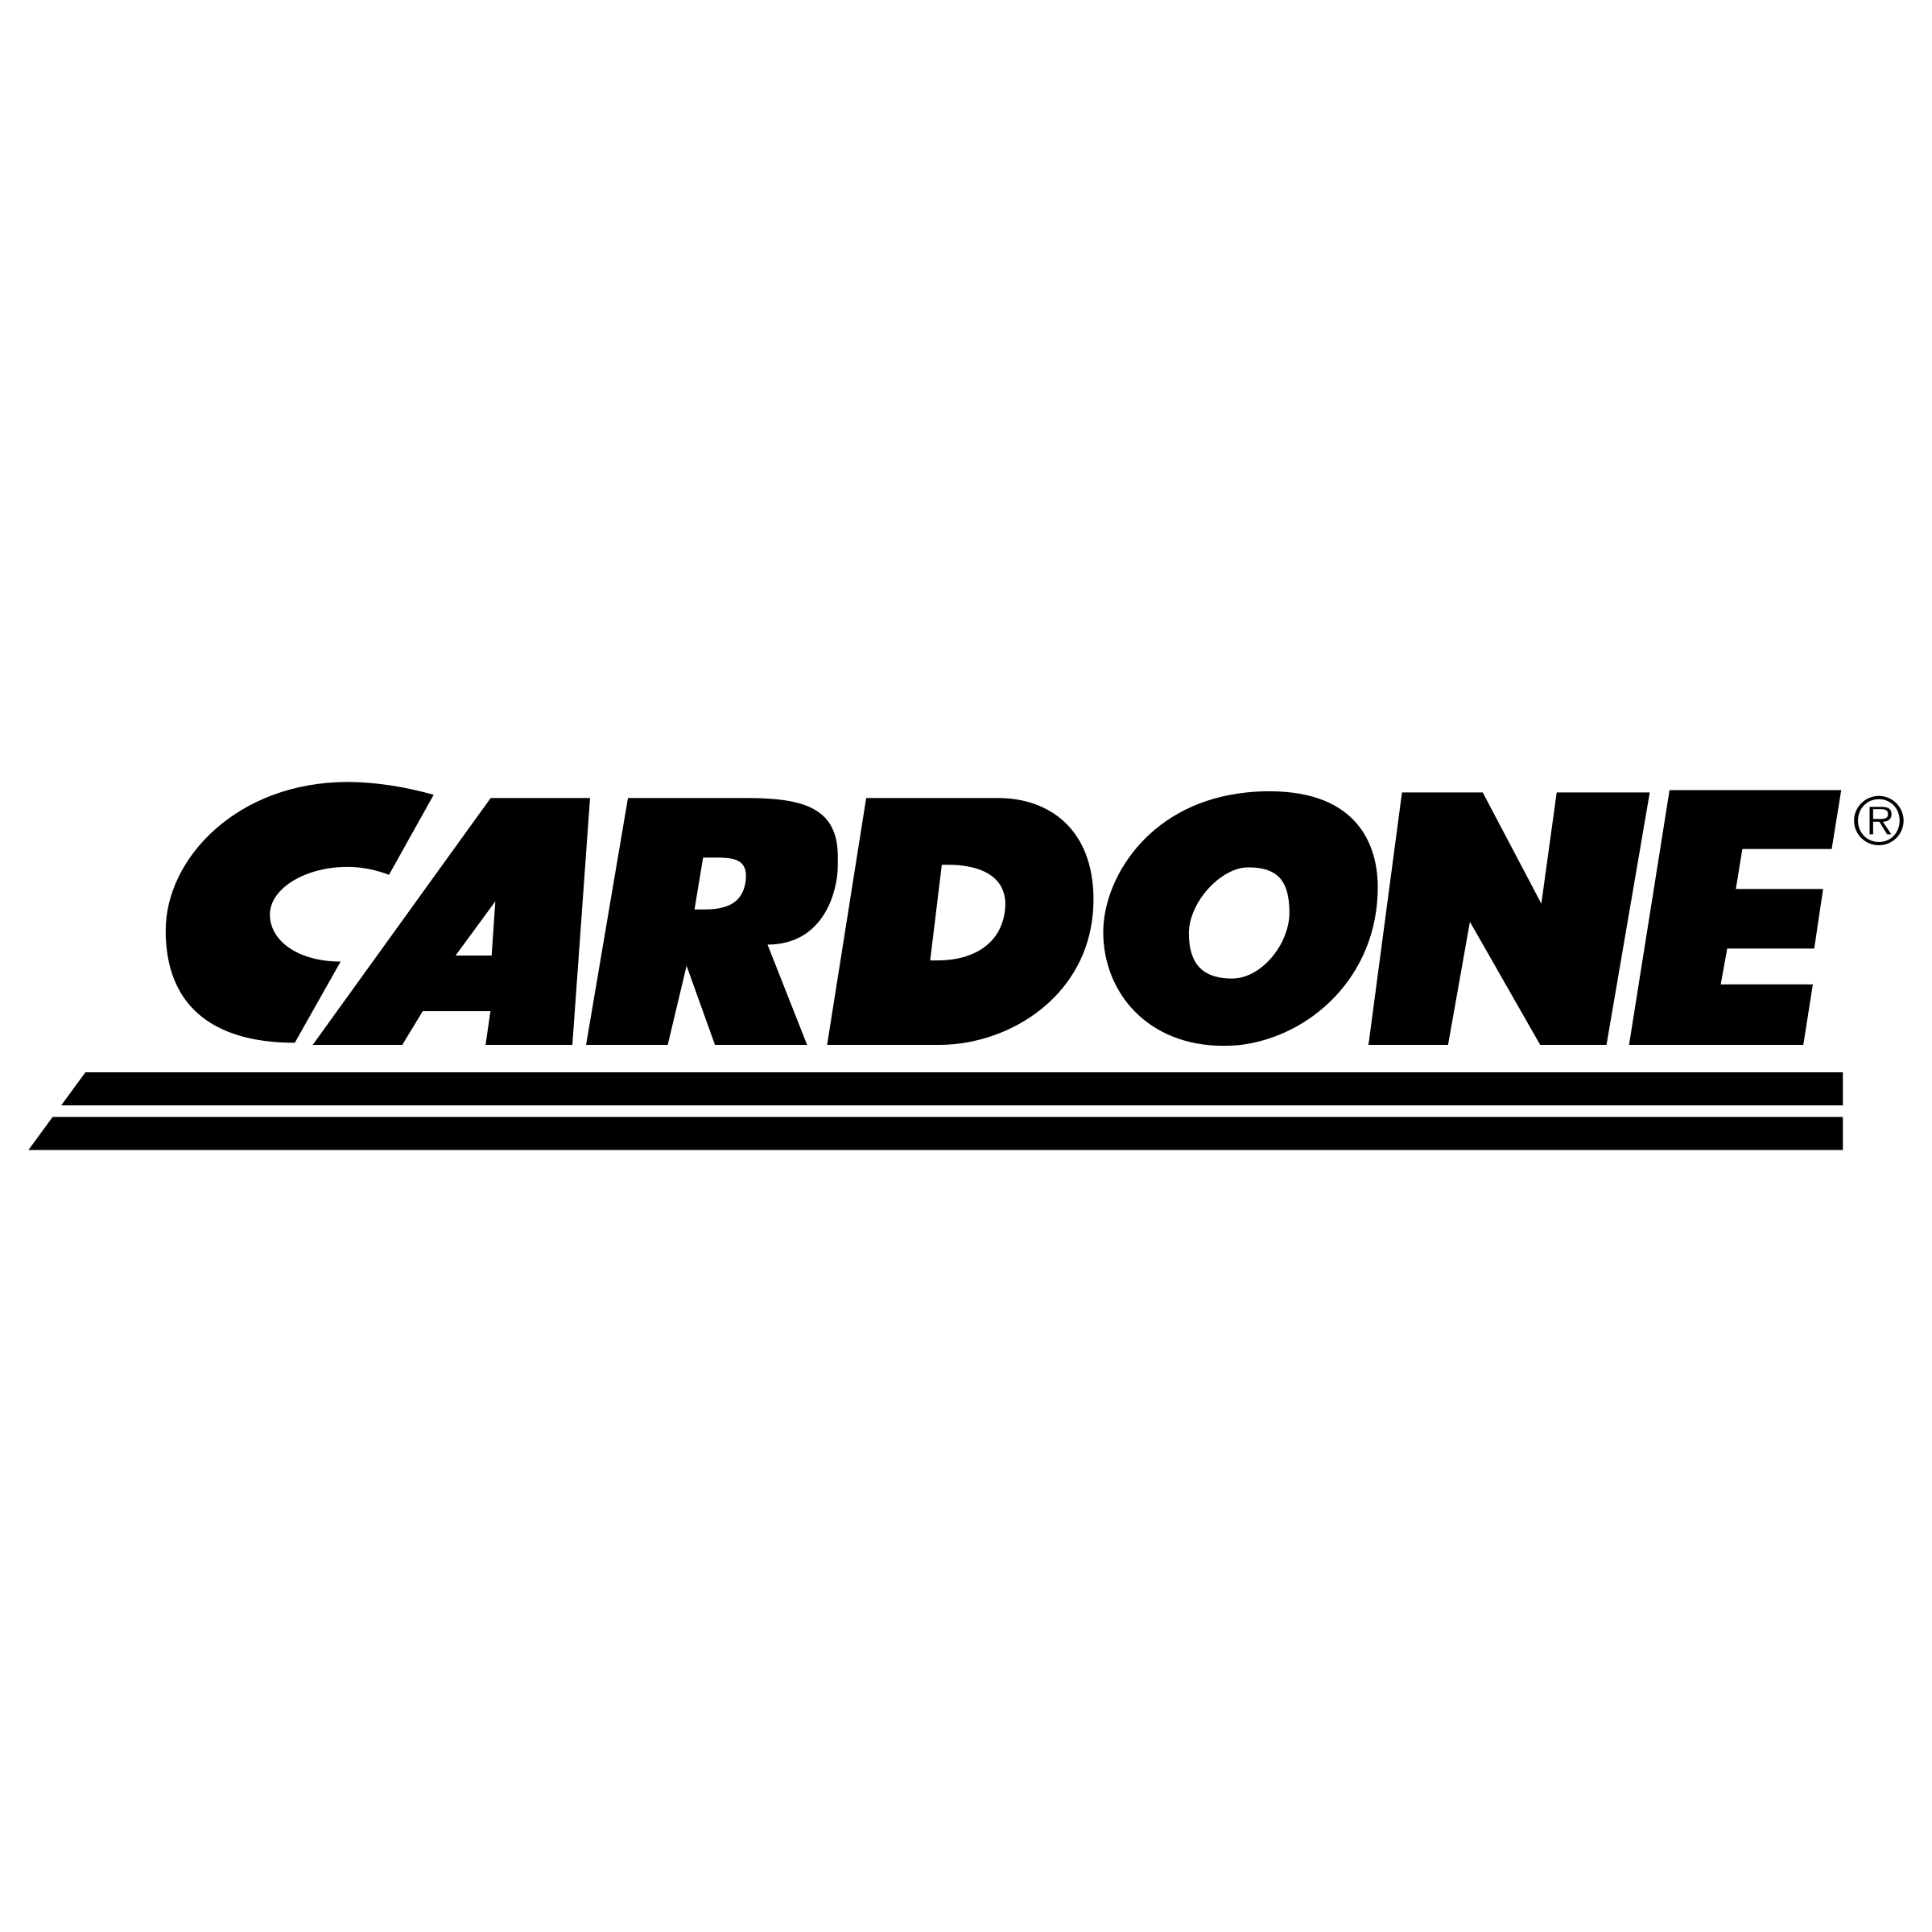 Cardone Logo - Cardone Logo PNG Transparent & SVG Vector